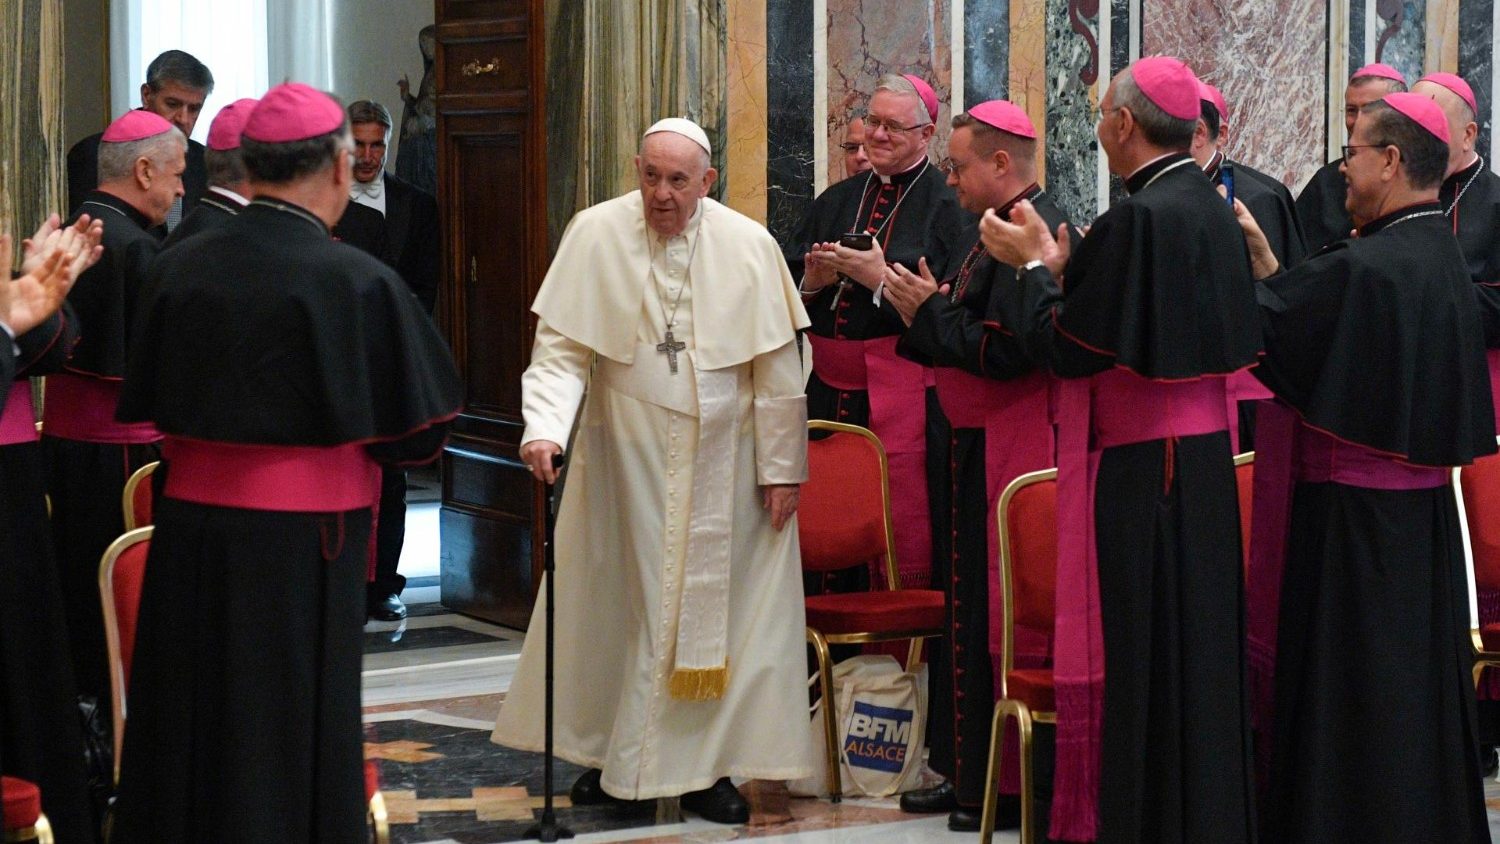 Папа Франциск на встрече с новыми епископами призвал их быть ближе к бедным